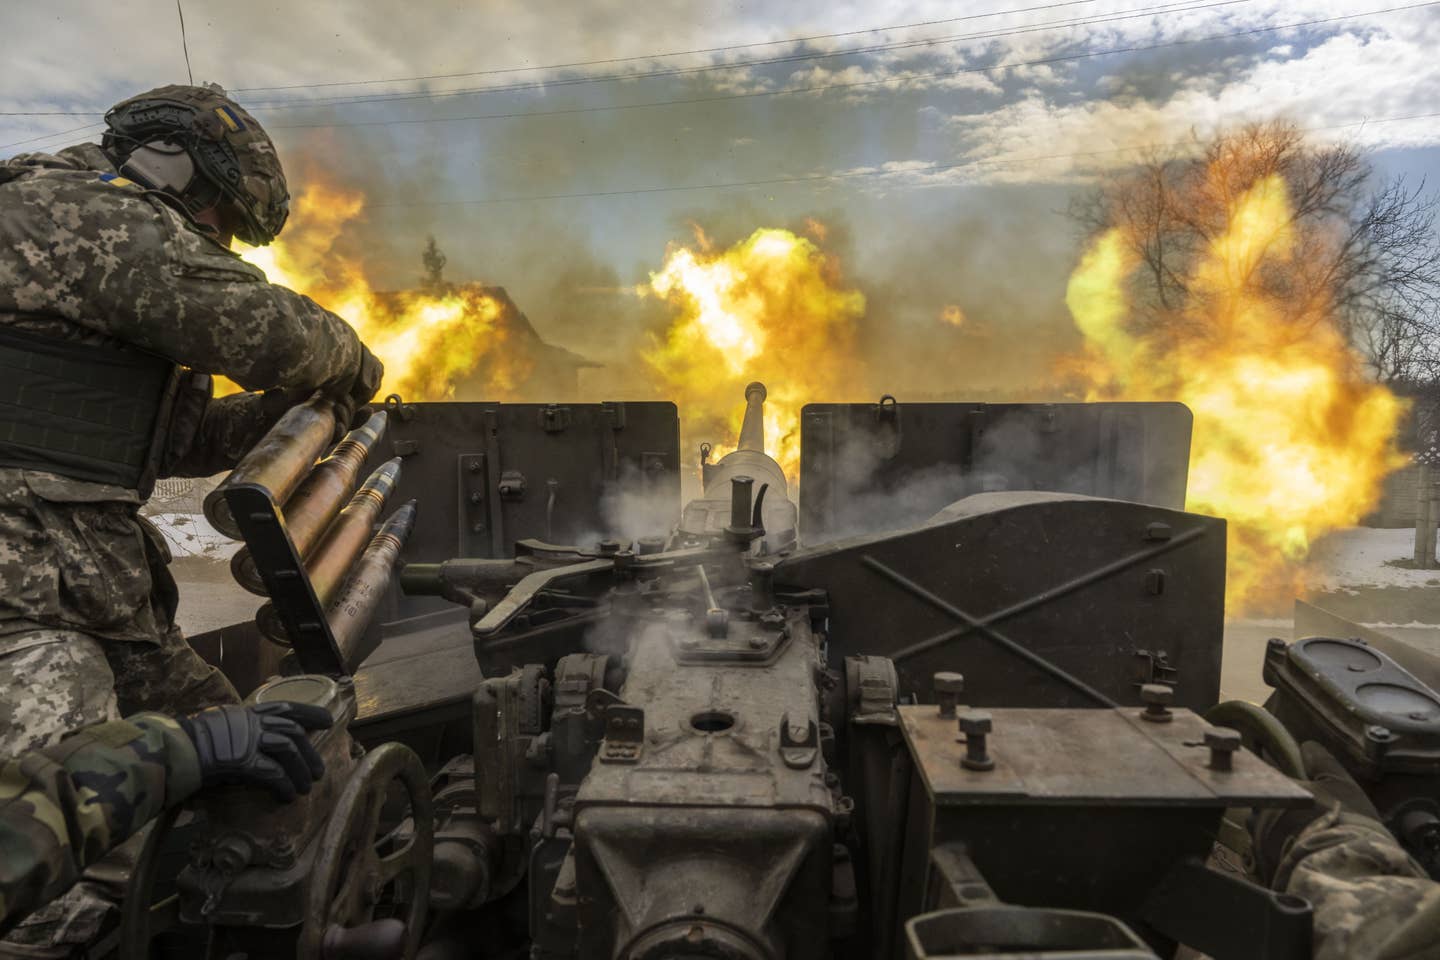 Ukrainian servicemen fire an artillery shell near the frontline area amid the Russia-Ukraine war, in Bakhmut, Ukraine on April 2, 2023. (Photo by Muhammed Enes Yildirim/Anadolu Agency via Getty Images)